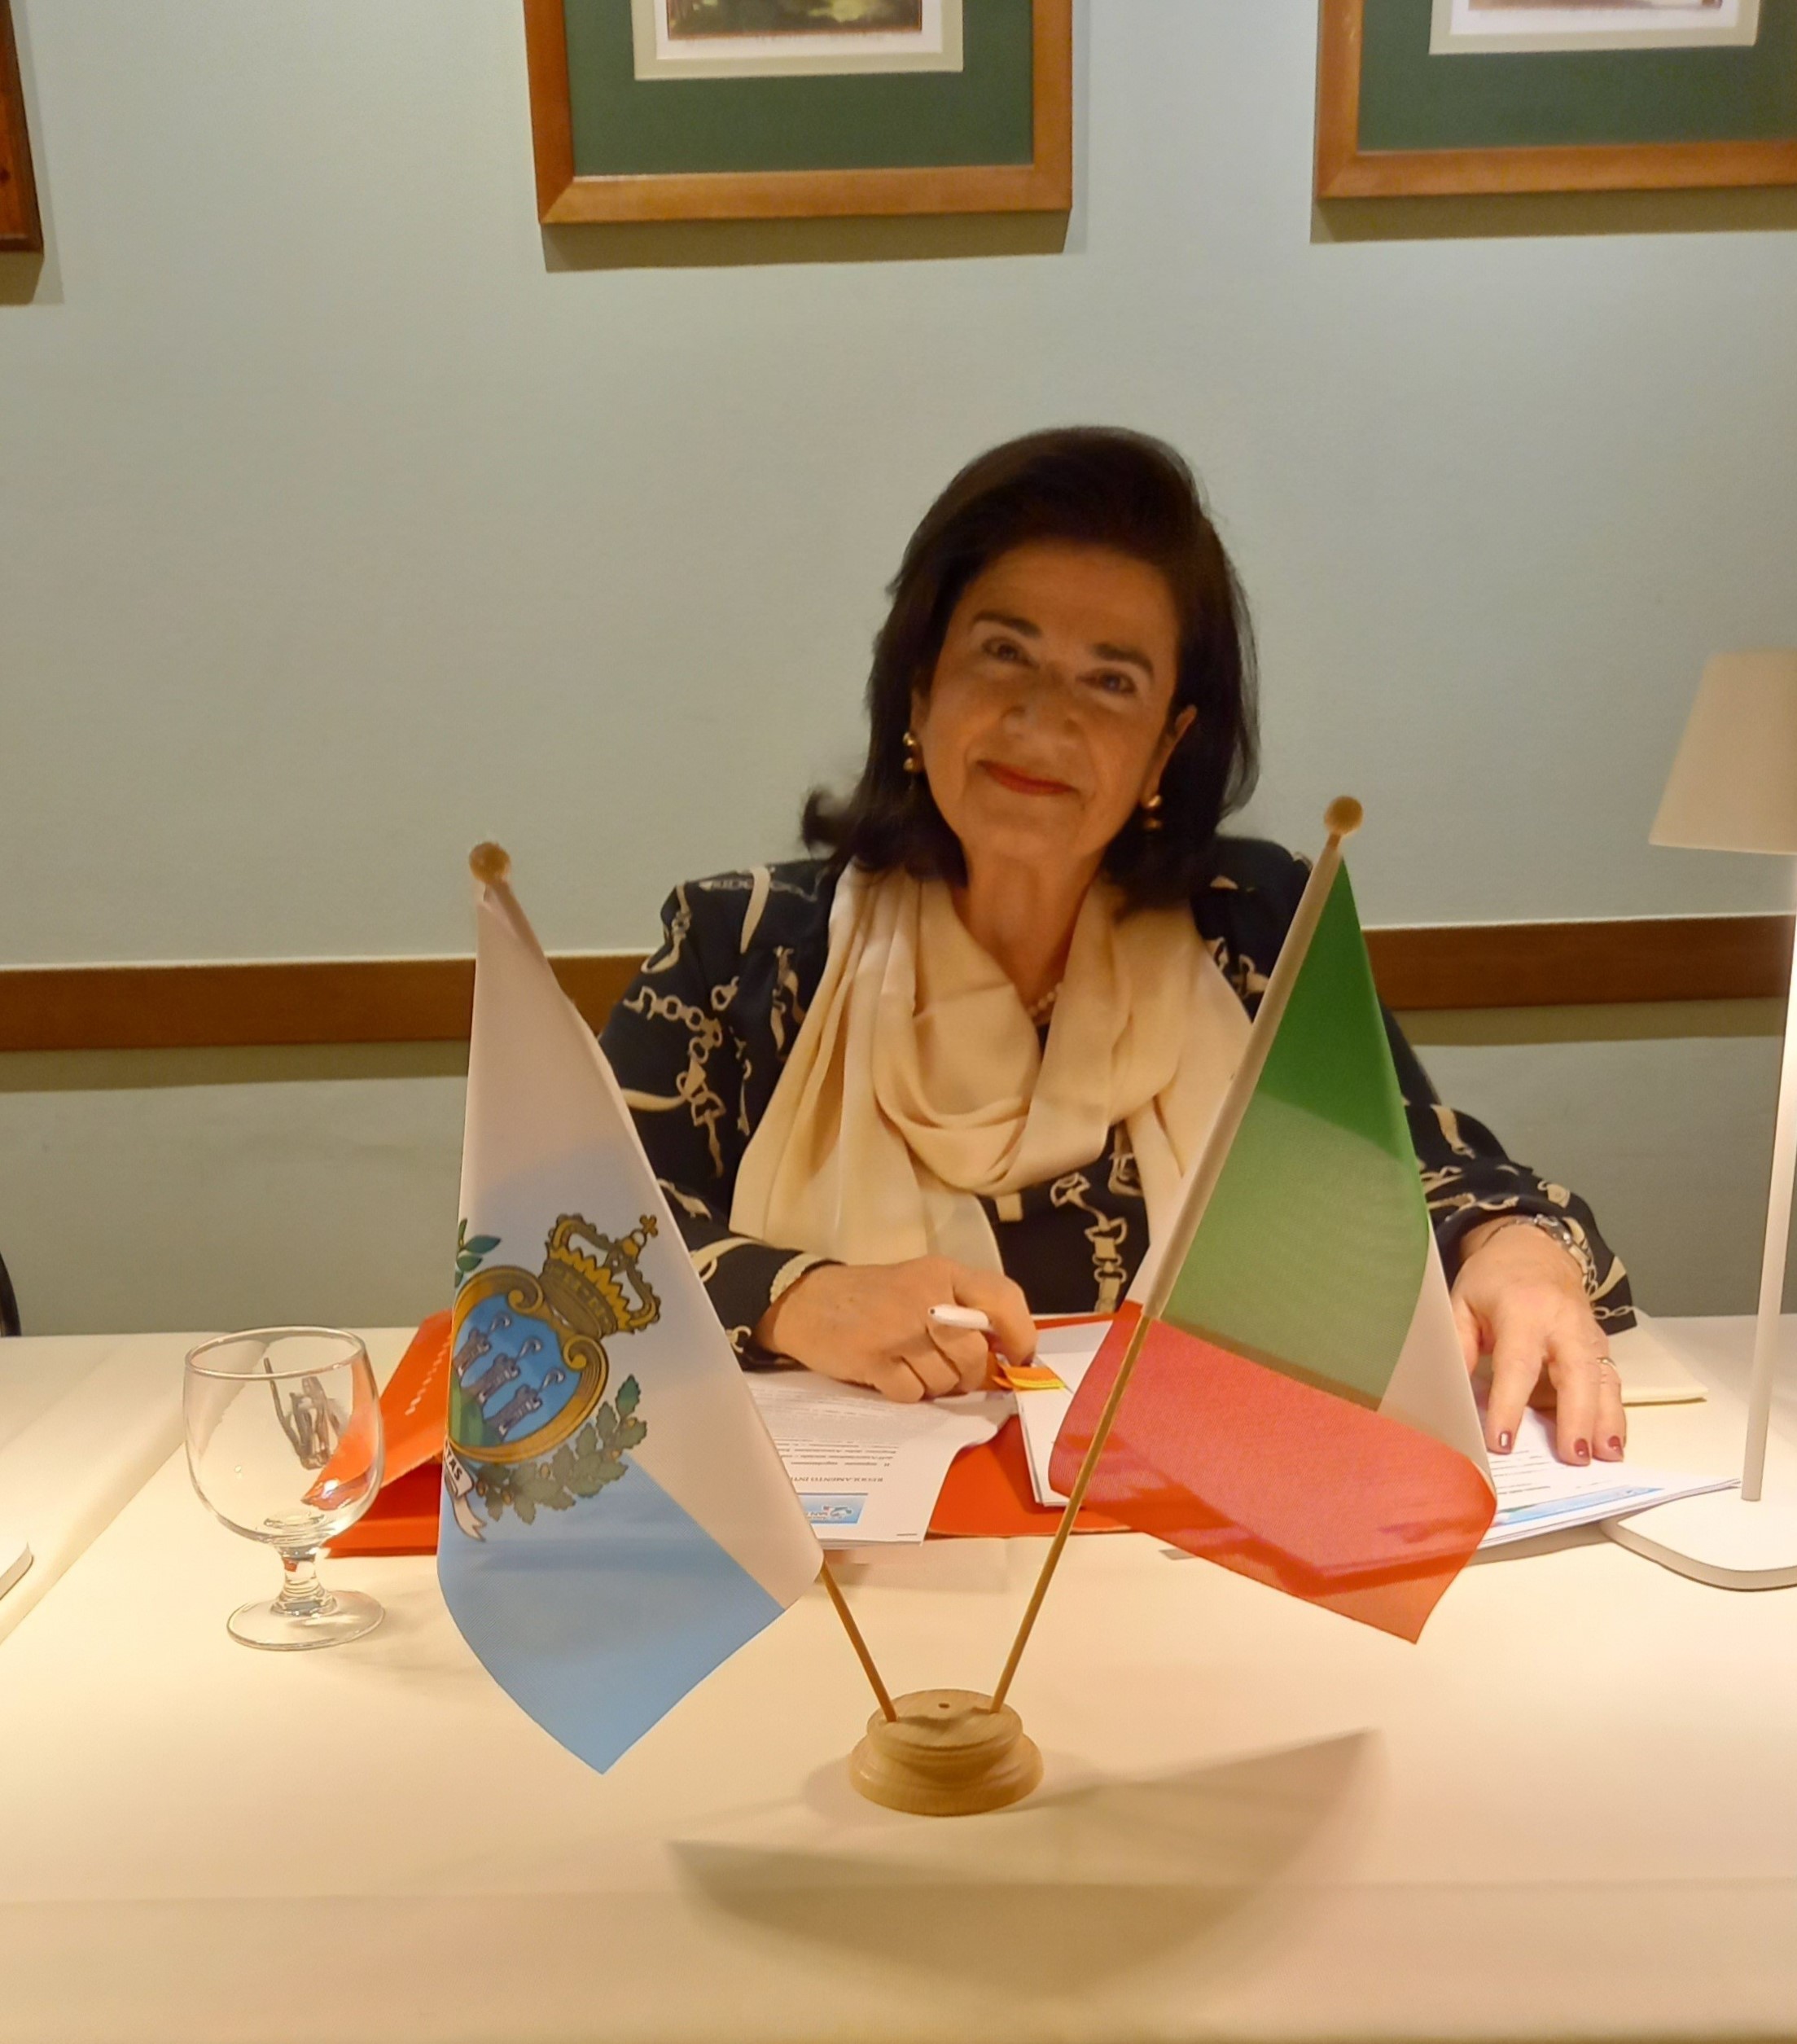 Associazione San Marino-Italia, Elisabetta Righi Iwanejko riconfermata presidente per un altro triennio